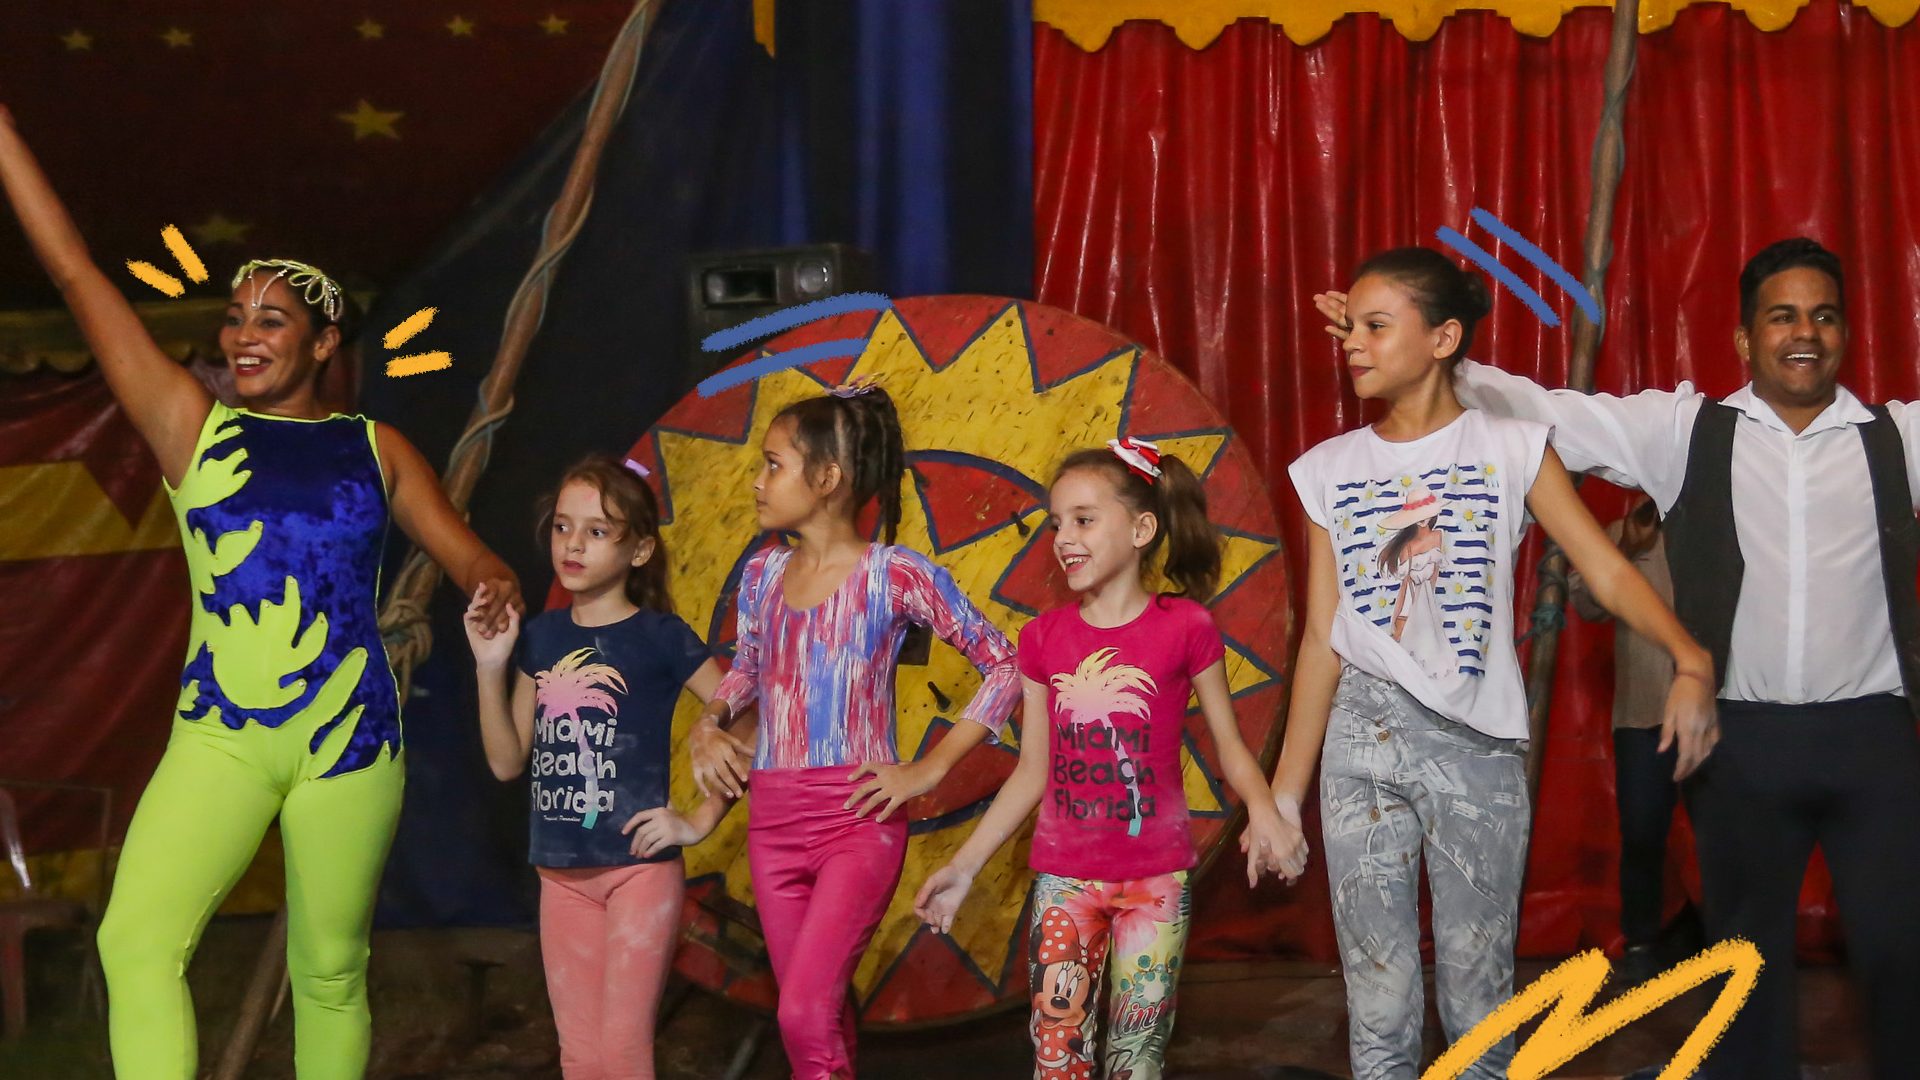 Foto de um grupo de crianças se apresentando no circo. Todas vestem roupas coloridas.